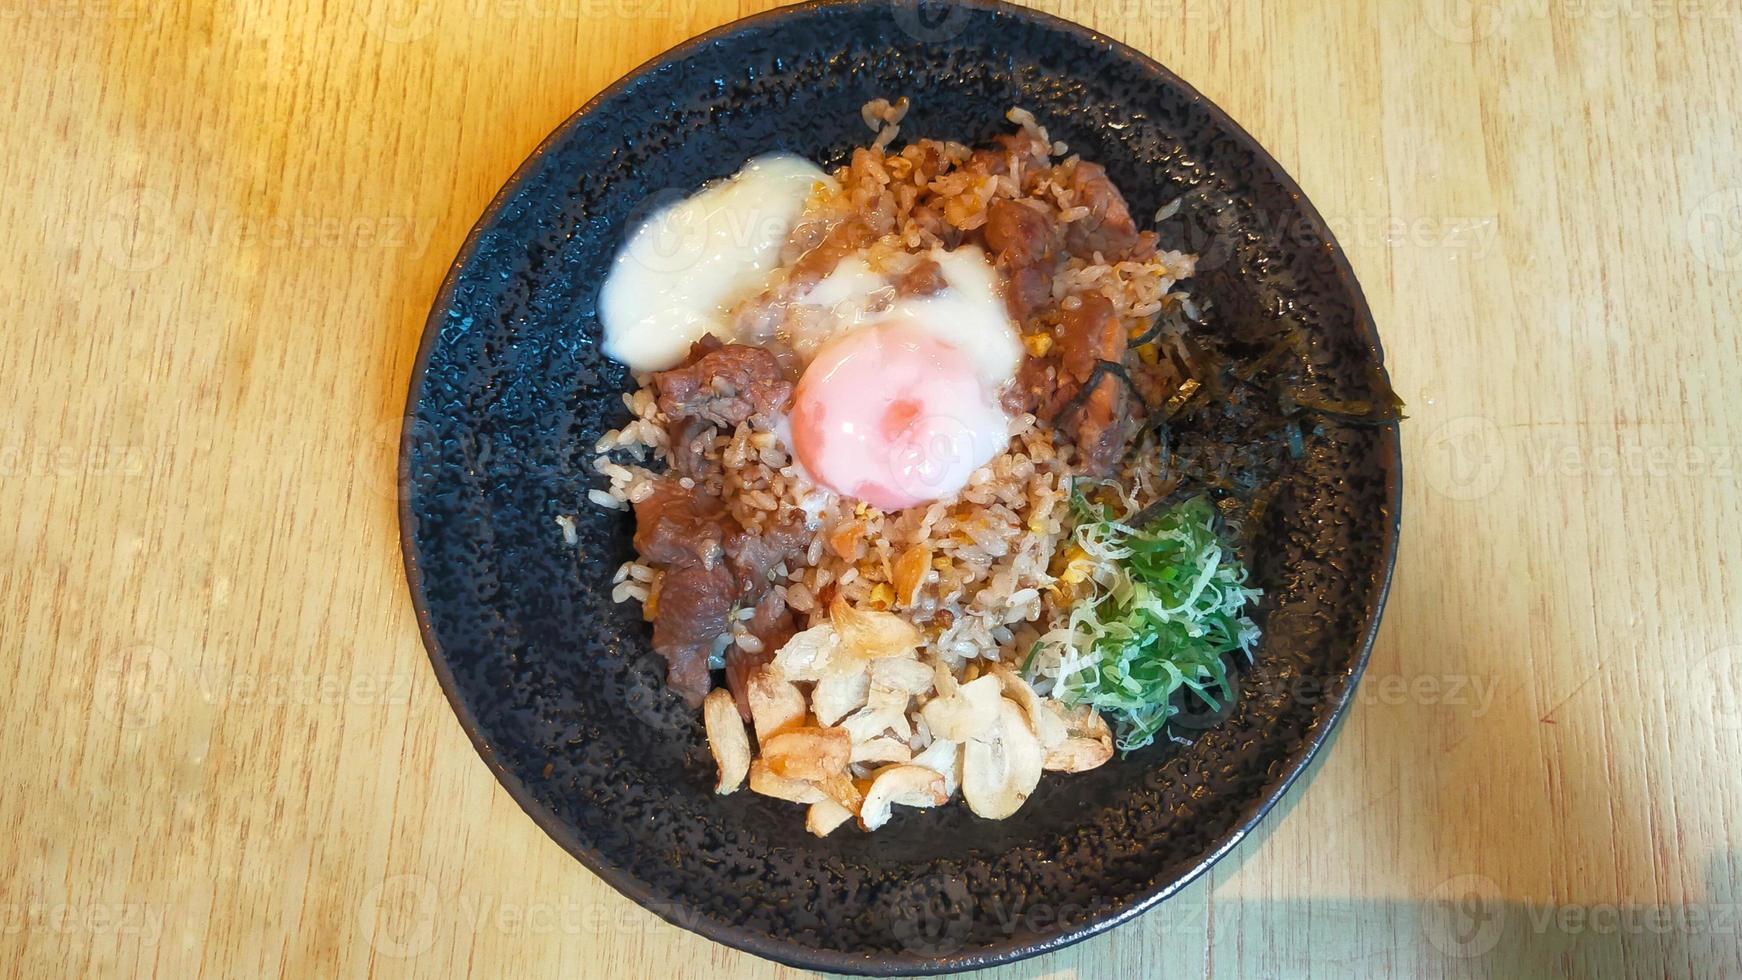 un menú de un restaurante de sushi arroz frito con ajo y ternera con huevo onsen es arroz frito con cebolla con ternera a medio cocer y huevo, muy sabroso. foto